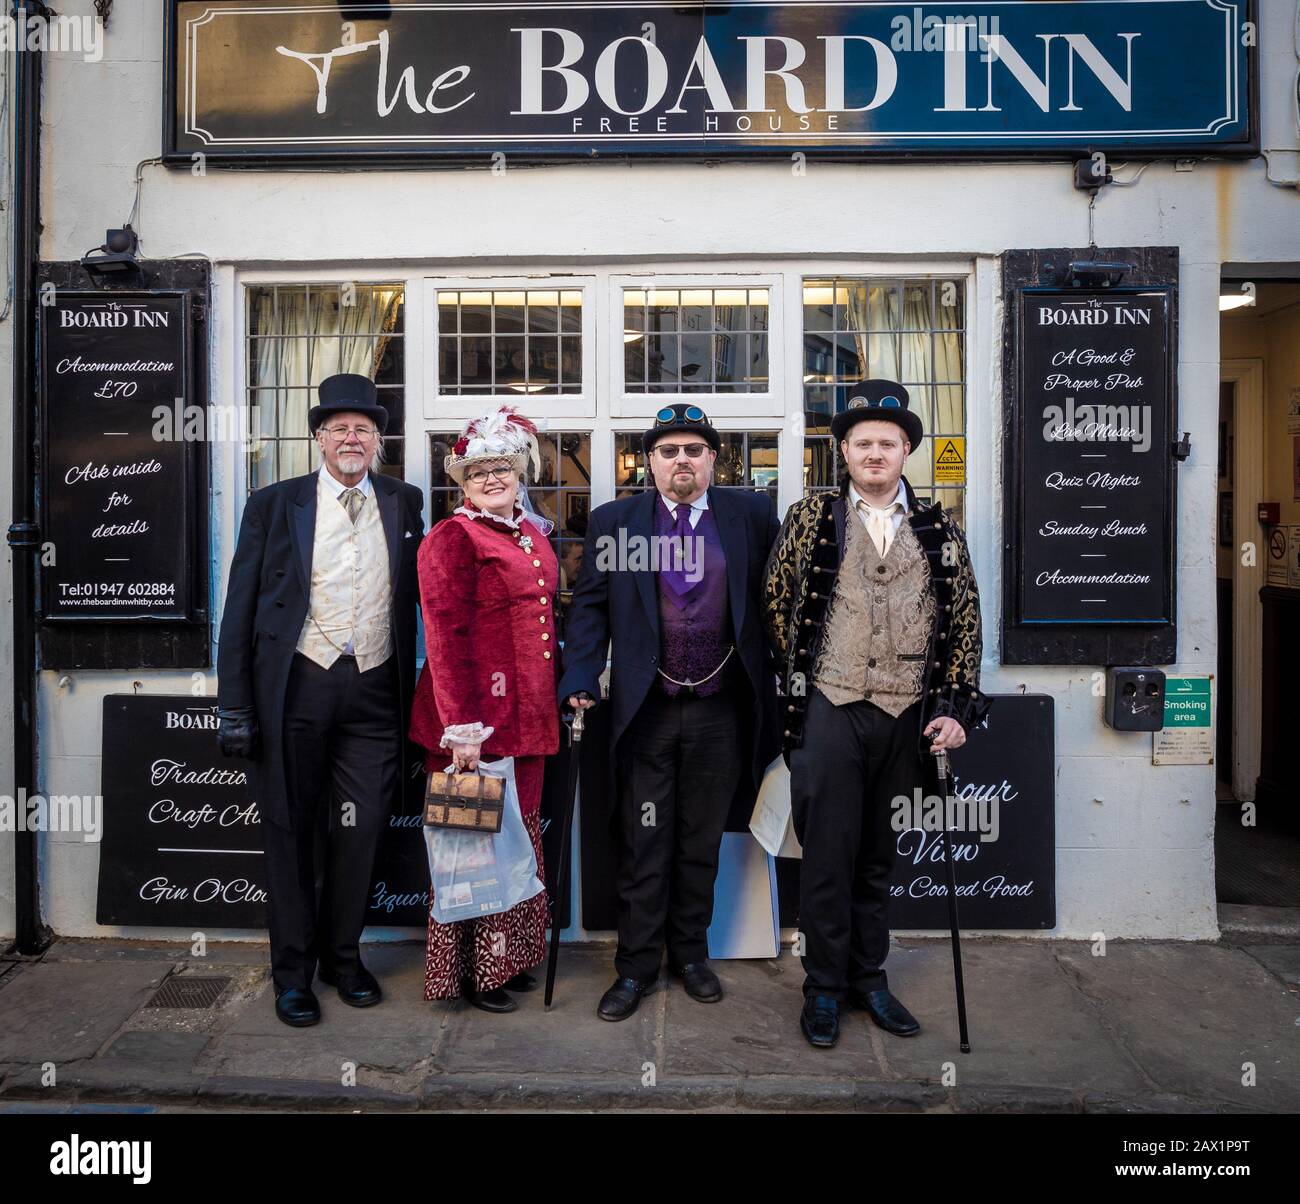 Vier Personen kleideten sich während des Steampunk-Wochenendes, Whitby, Großbritannien, vor dem Board Inn an. Stockfoto